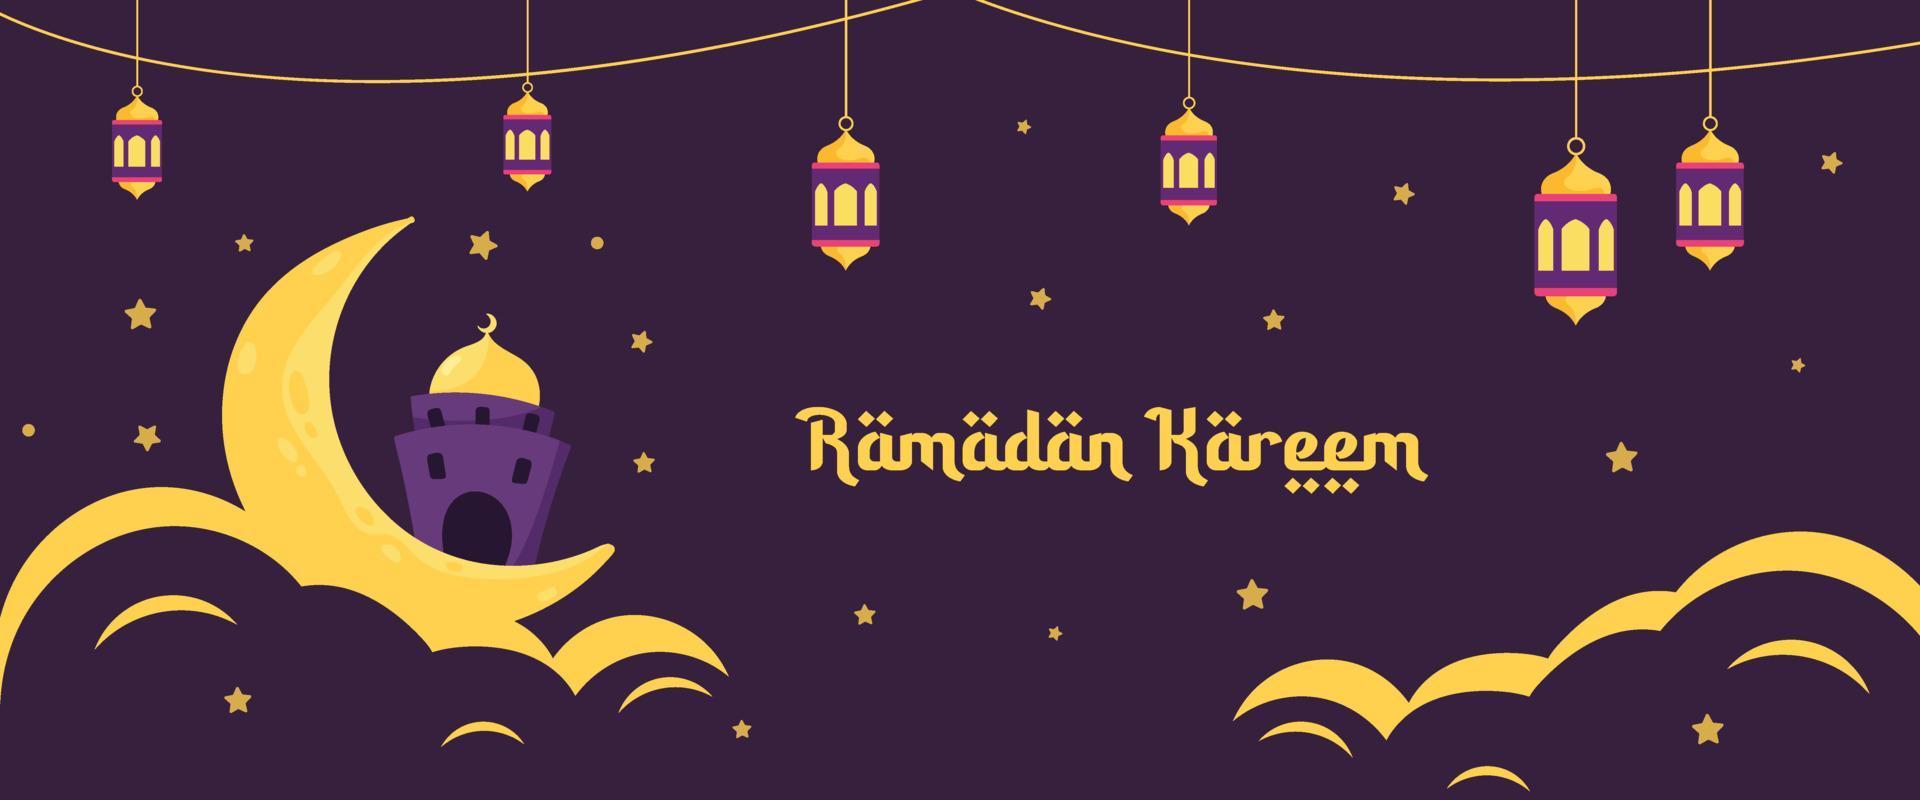 illustration de ramadan kareem avec concept de croissant de lune, de mosquée et de lanterne. style de bande dessinée design plat vecteur